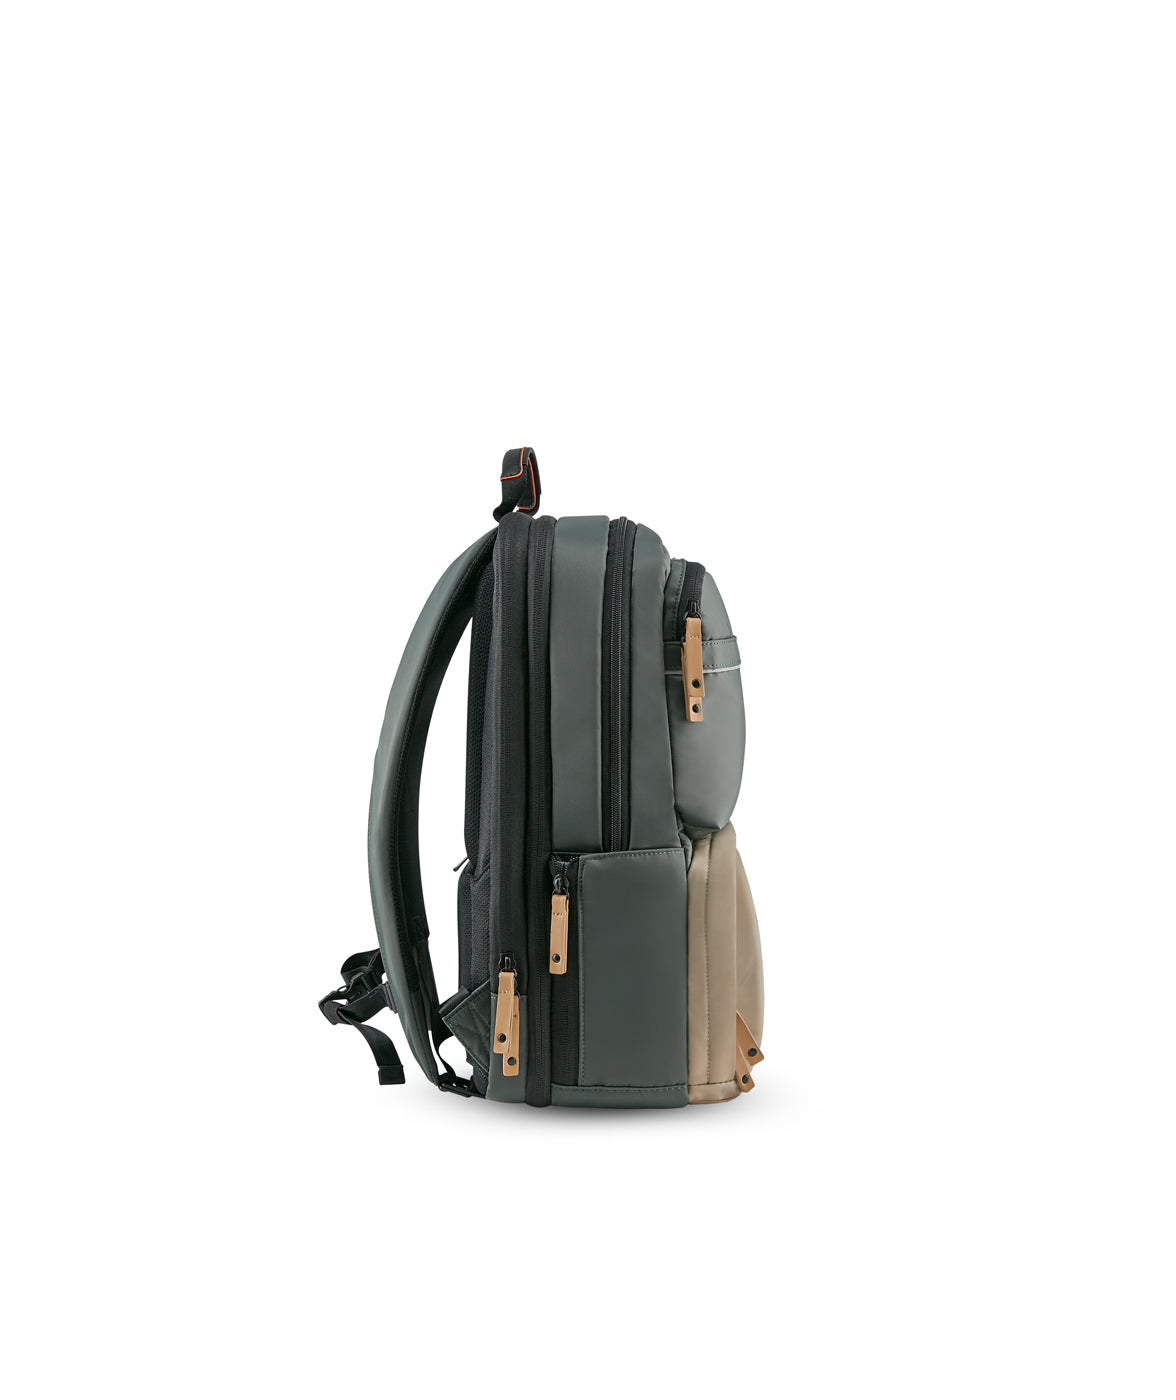 DayOne Backpack